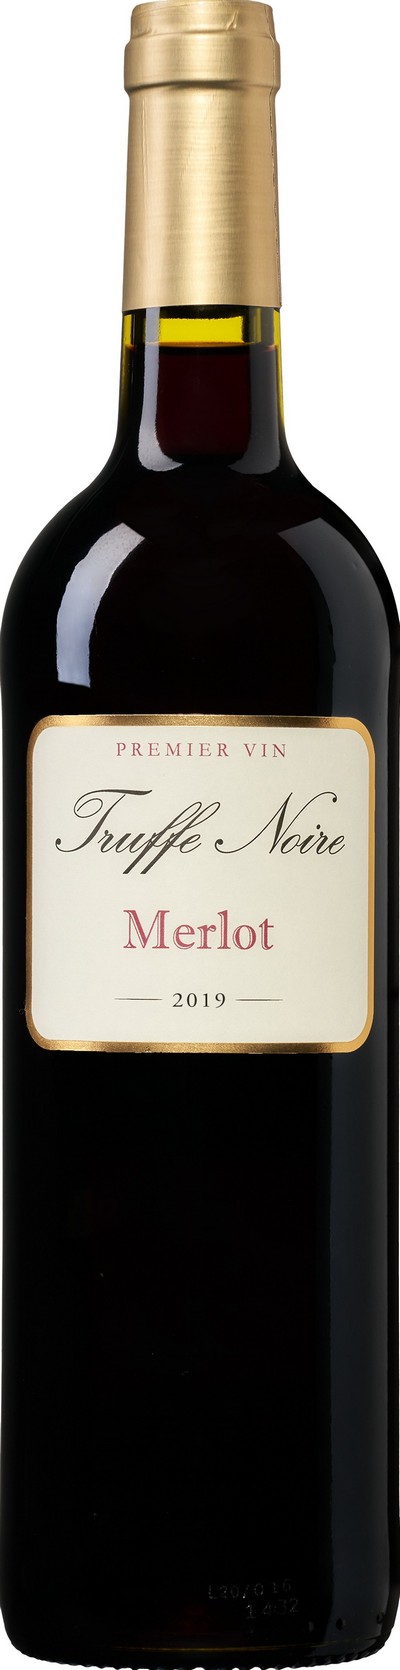 truffe-noire-merlot-pays-doc-igp-2019